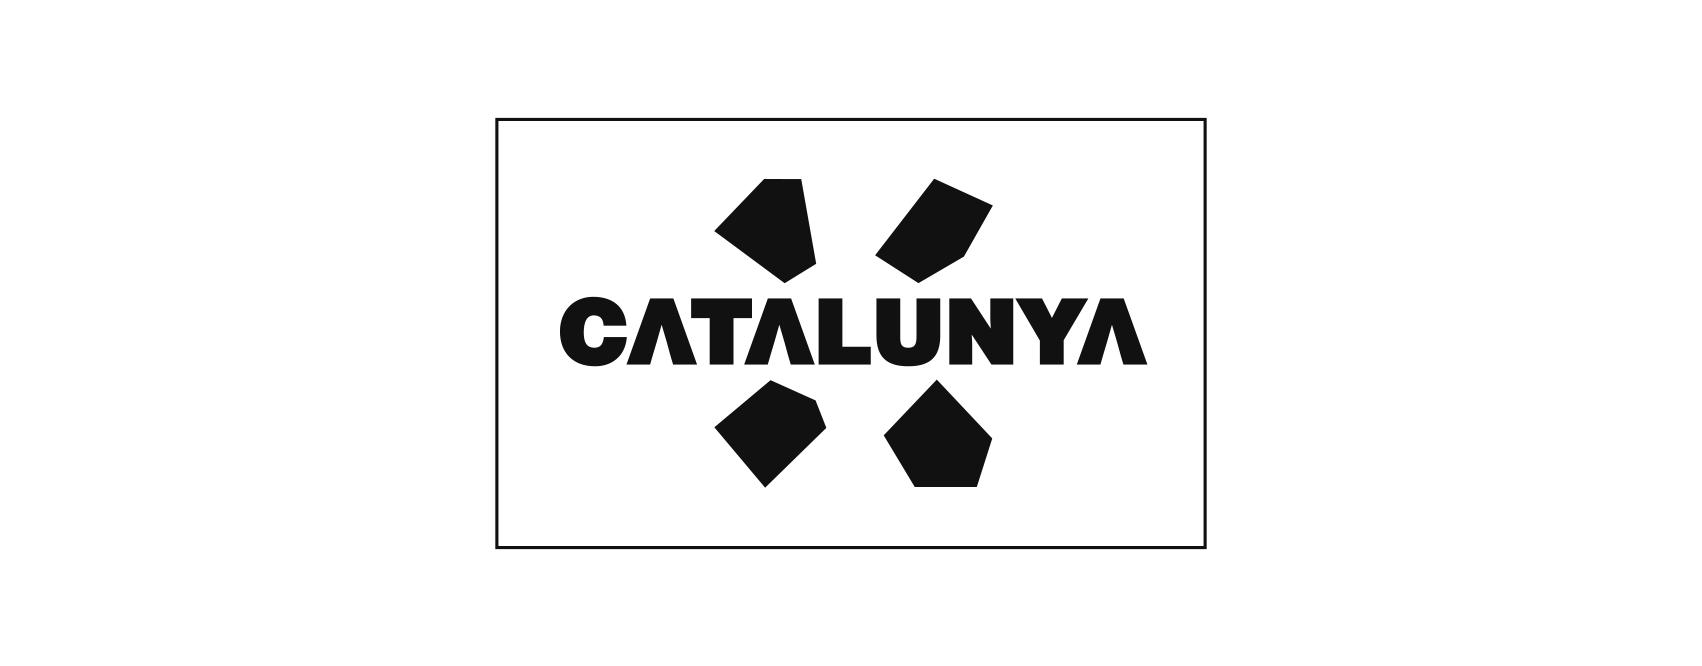 Catalunya-1